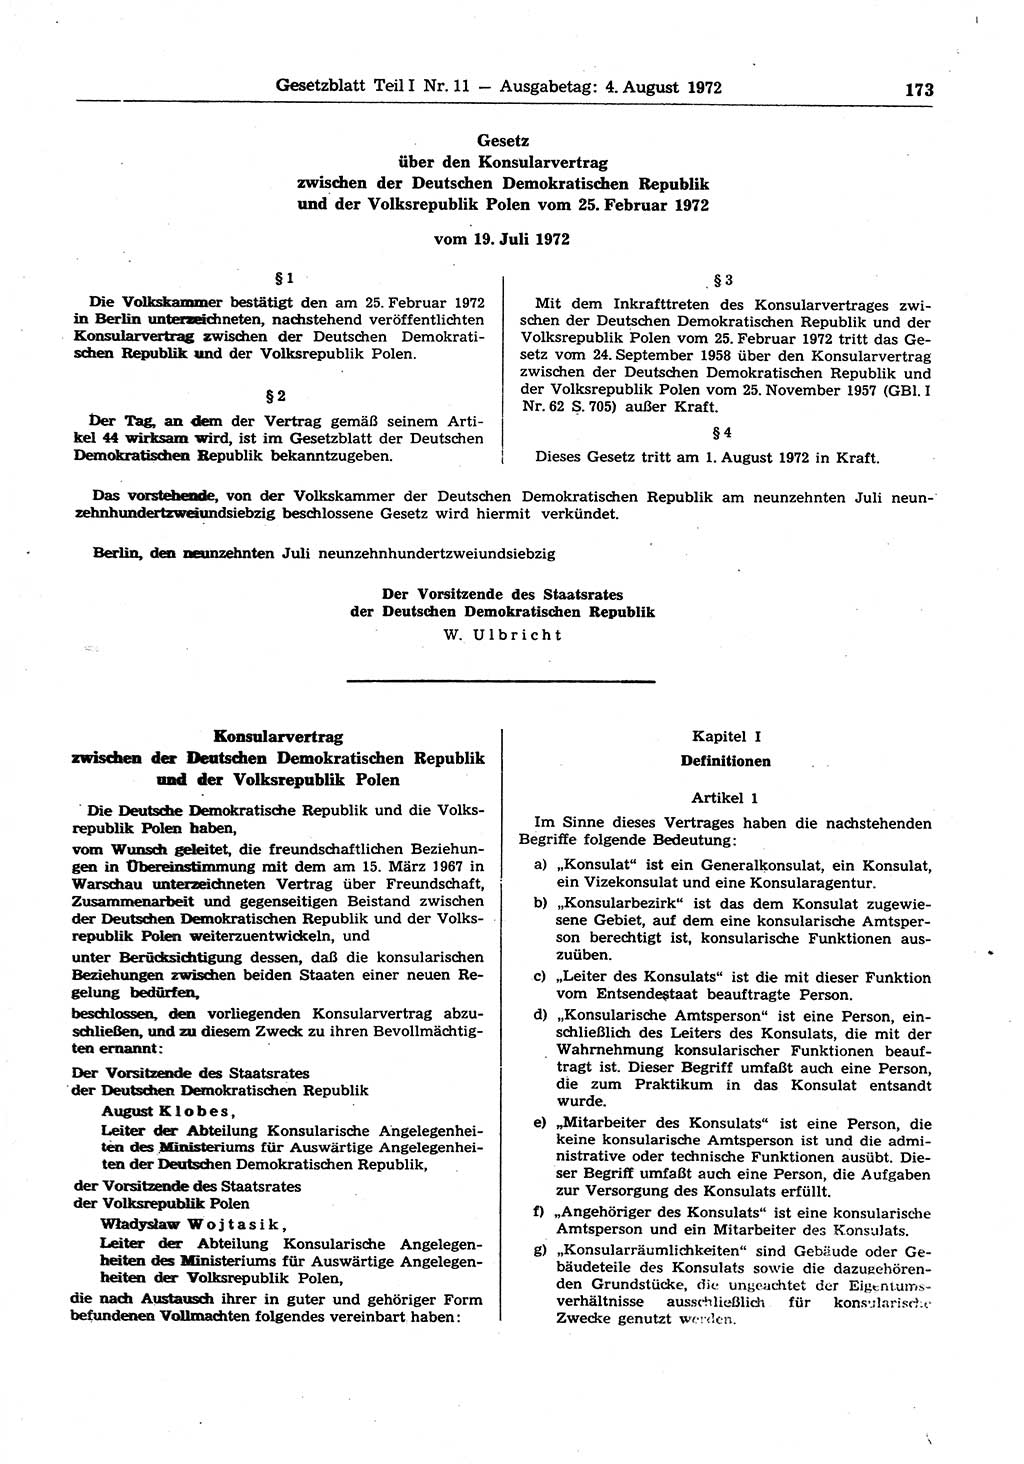 Gesetzblatt (GBl.) der Deutschen Demokratischen Republik (DDR) Teil Ⅰ 1972, Seite 173 (GBl. DDR Ⅰ 1972, S. 173)